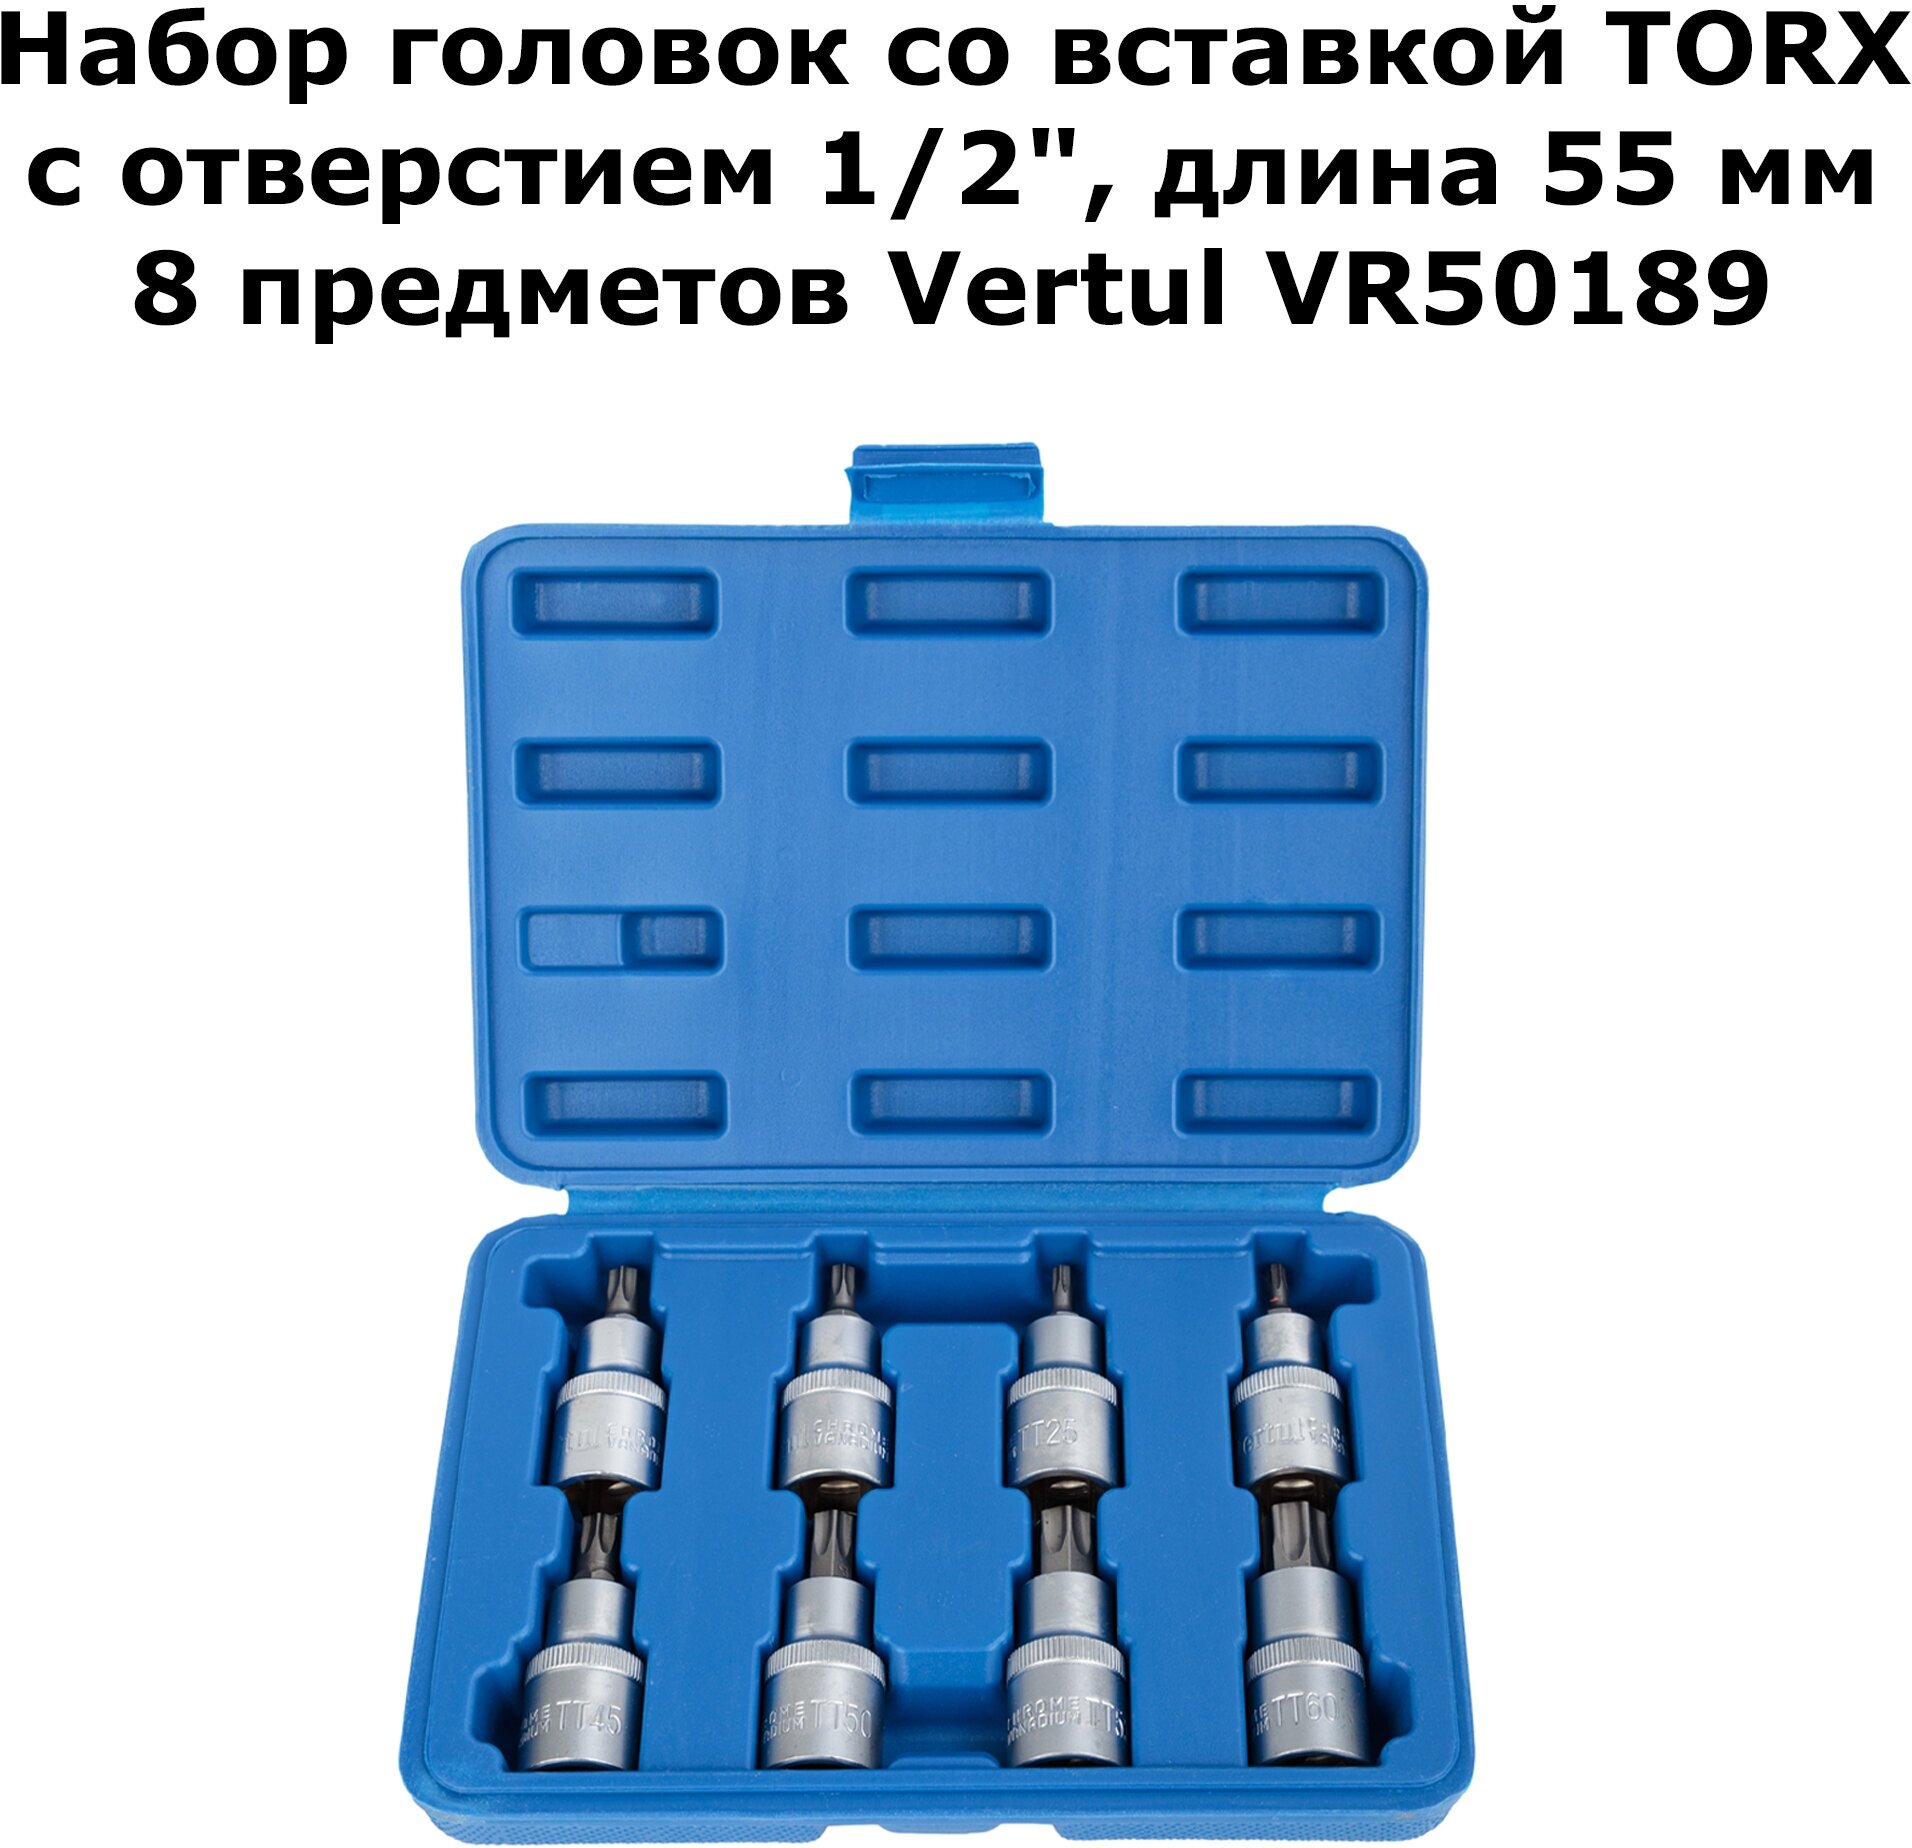 Набор головок со вставкой TORX с отверстием 1/2" 55 мм 8 предметов VR50189